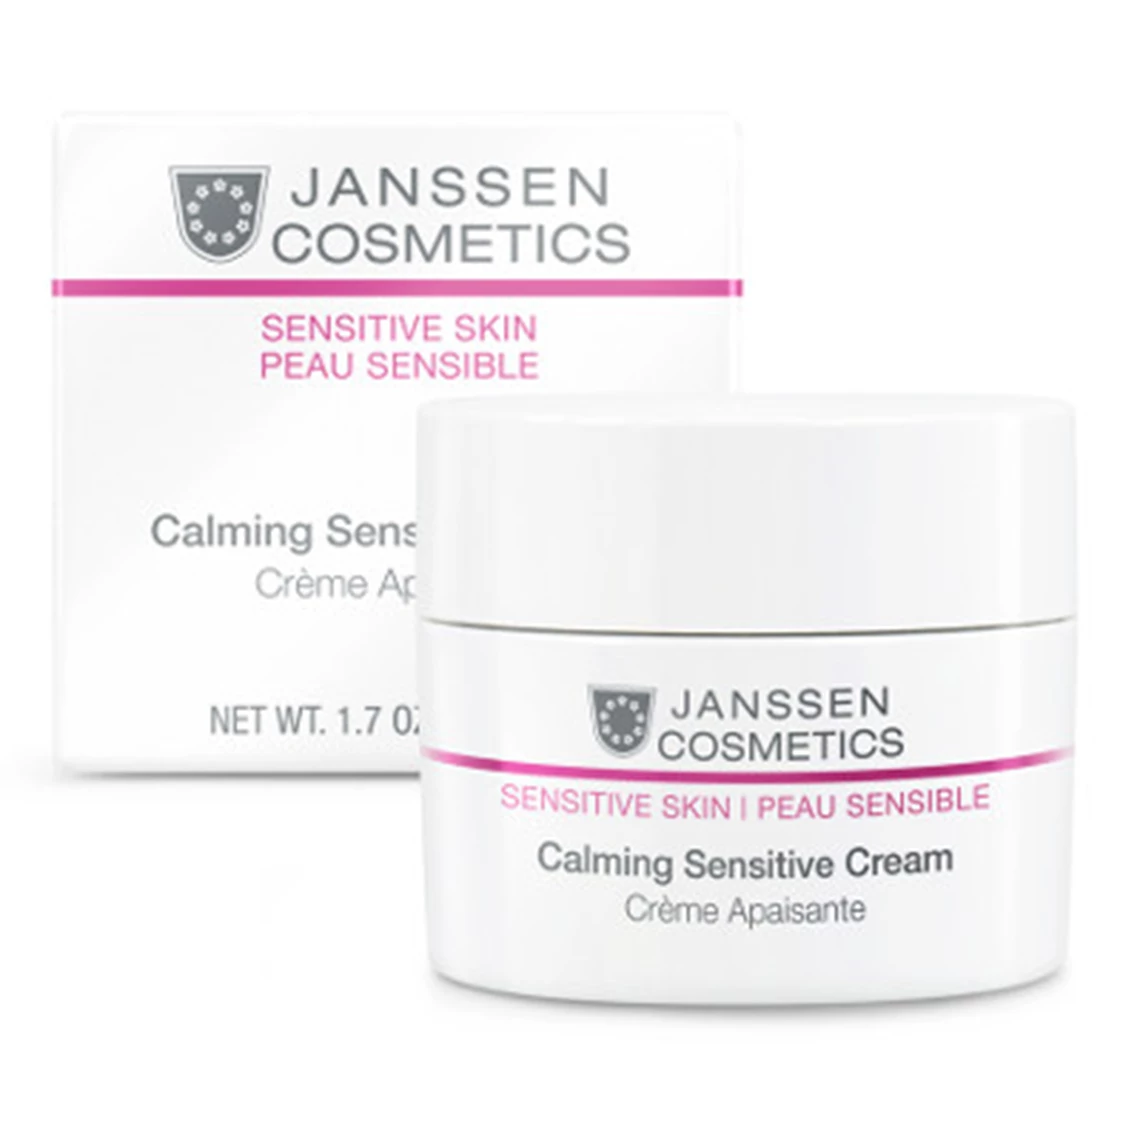 Calming Sensitive Cream by Janssen Cosmetics